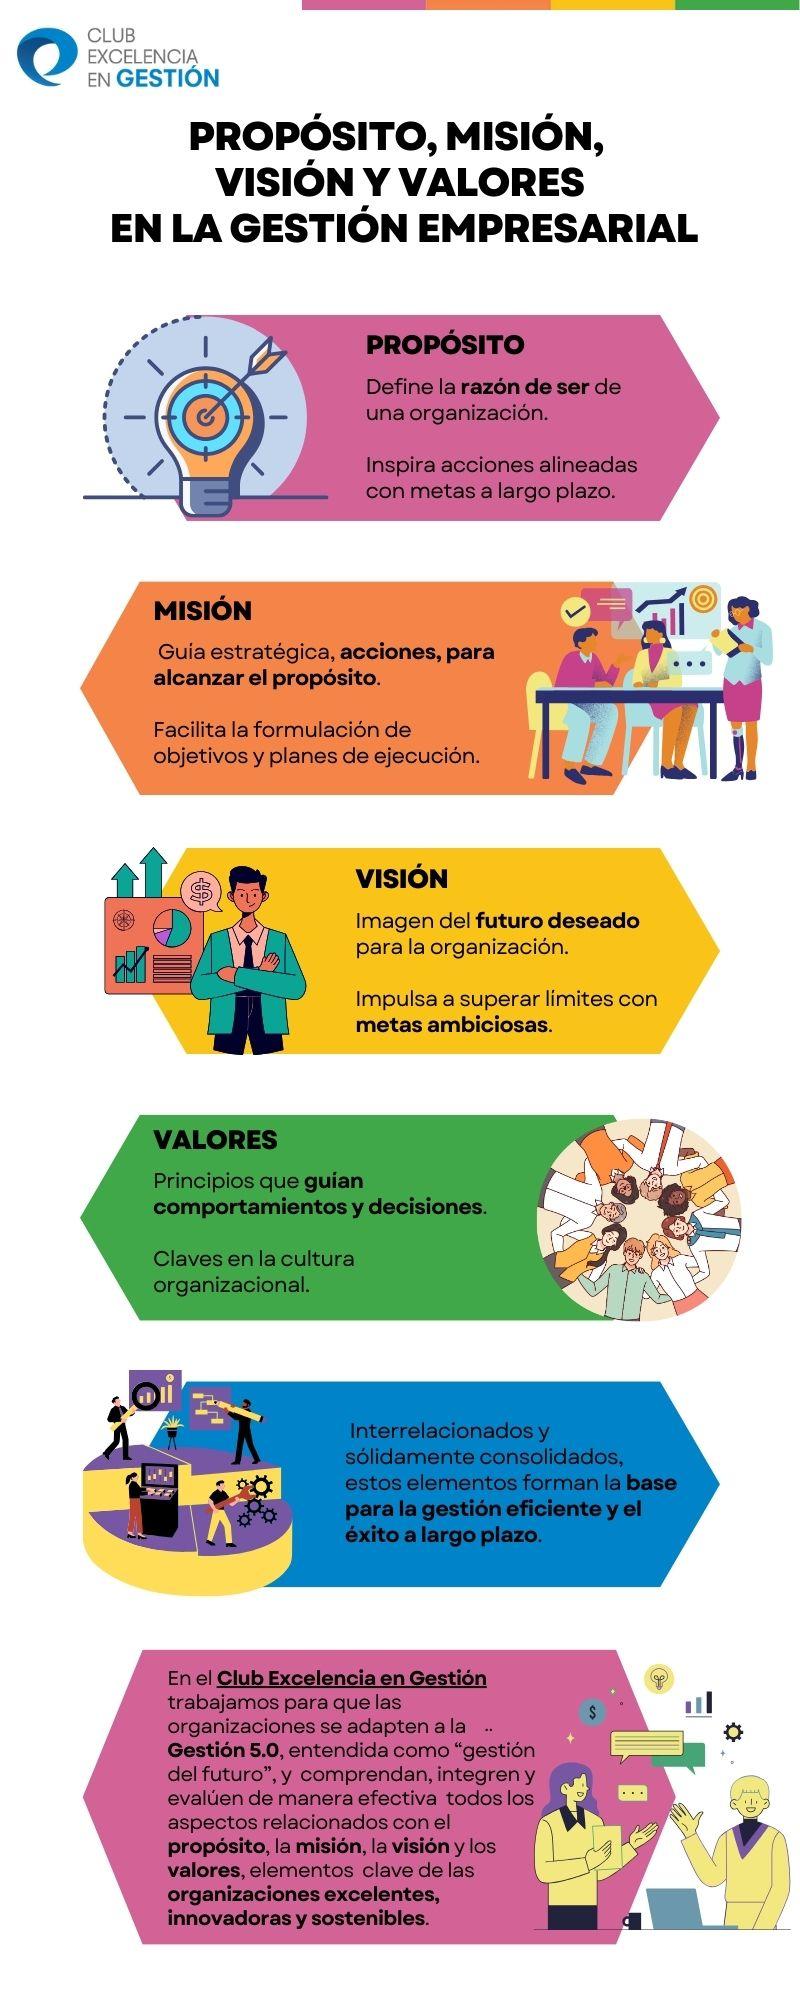 Imagen 3. Infografía. Propósito, misión, visión y valores en la gestión empresarial